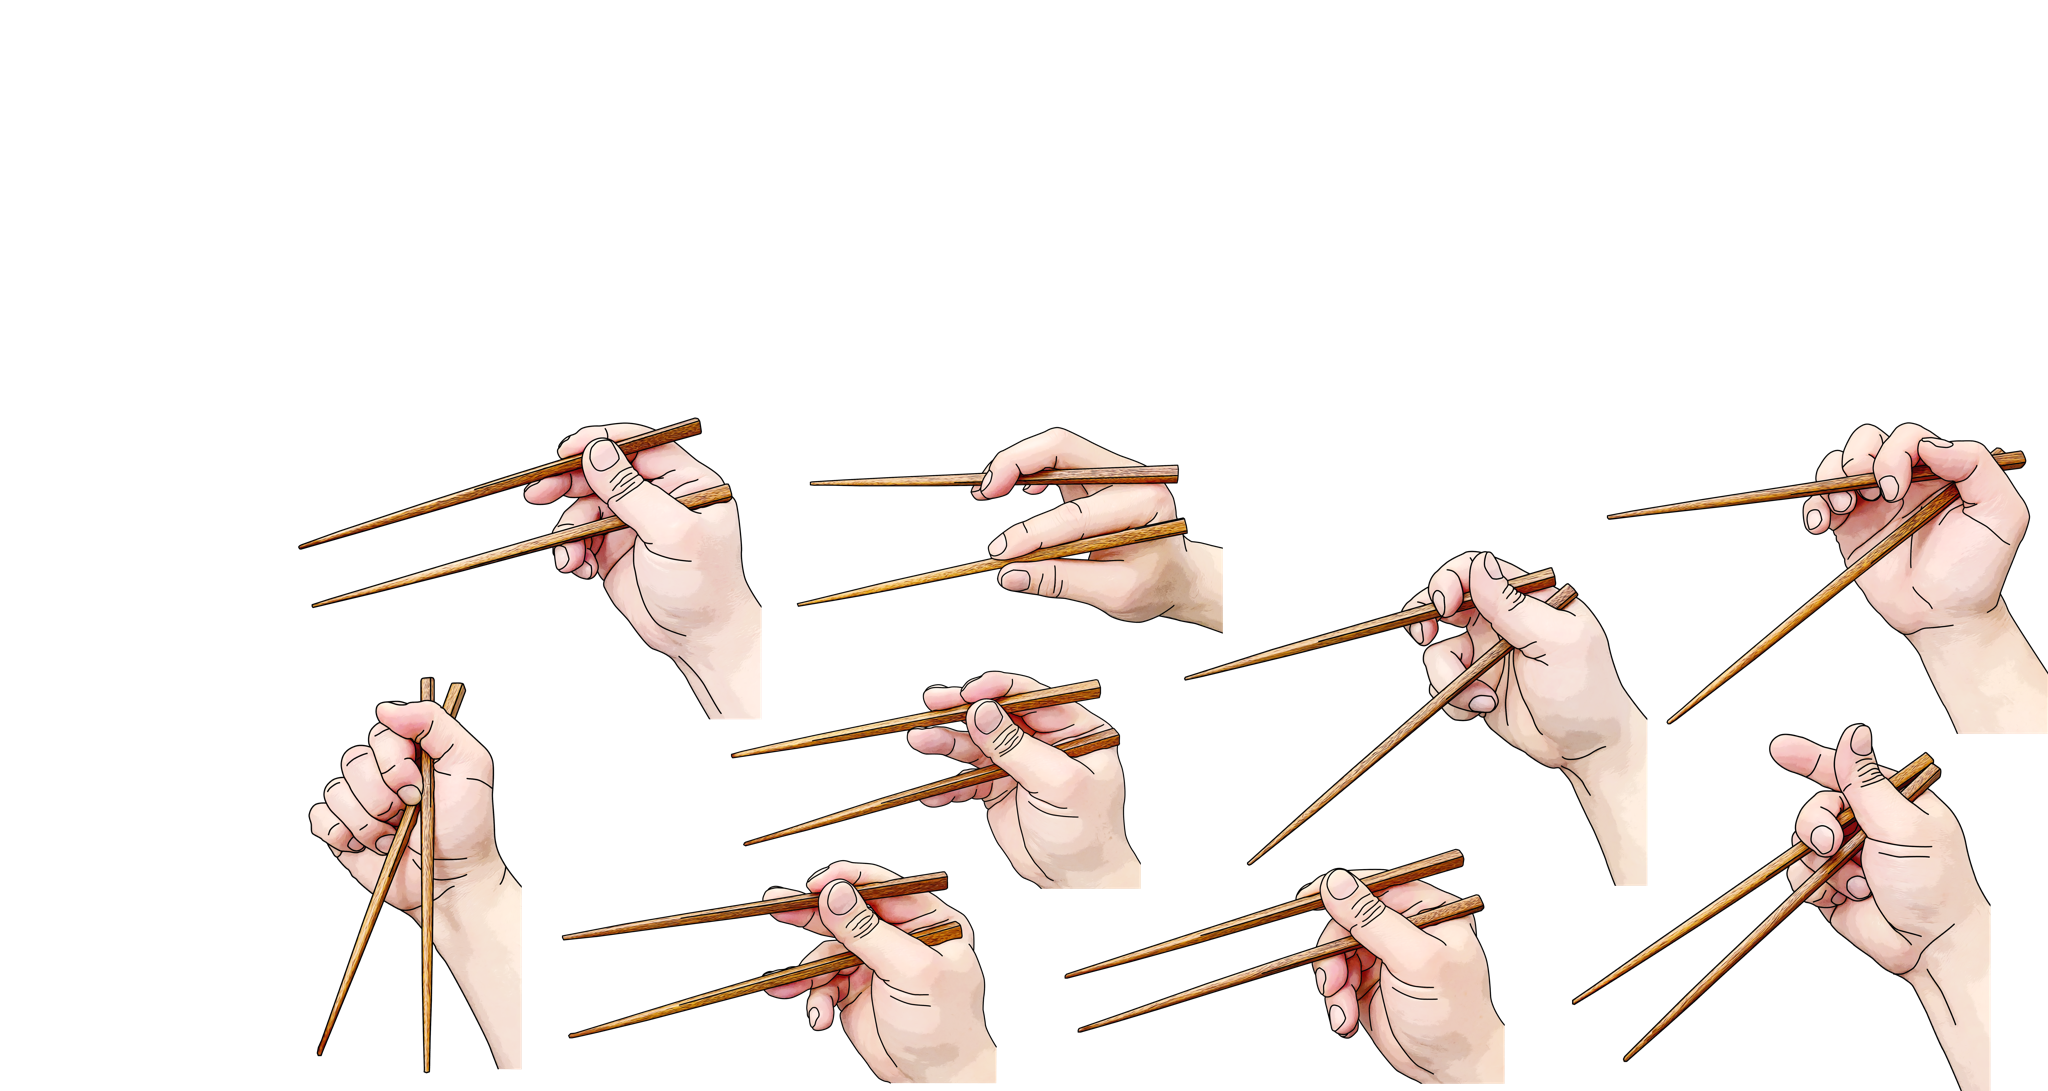 Картинку как держать палочки. Китайские палочки. Палочки для суши. Деревянные палочки для еды. Как держать китайские палочки фото.